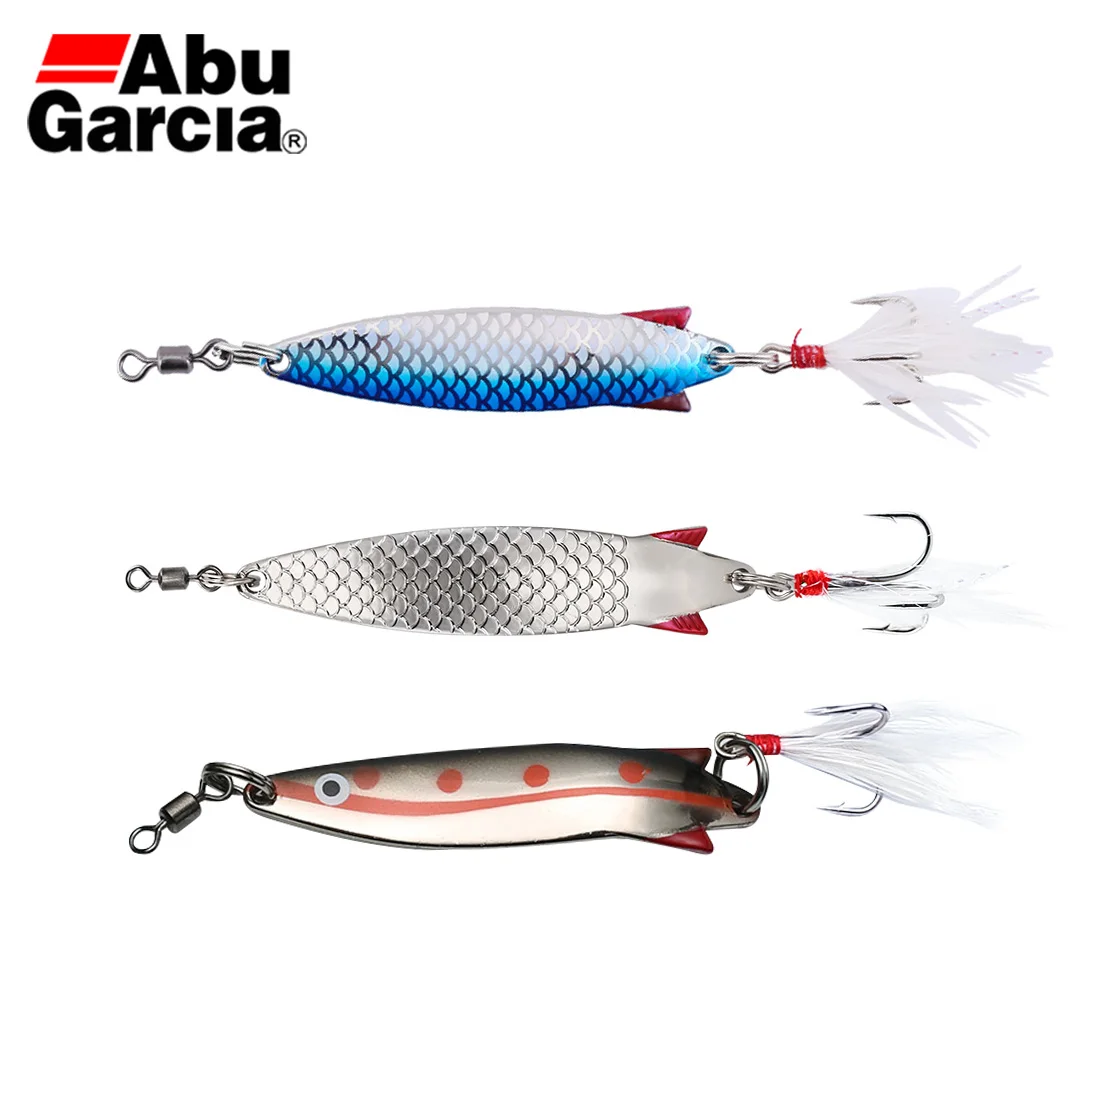 Abu Garcia intermitentes pescar arte cebo-Toby ® 10g Bluefish